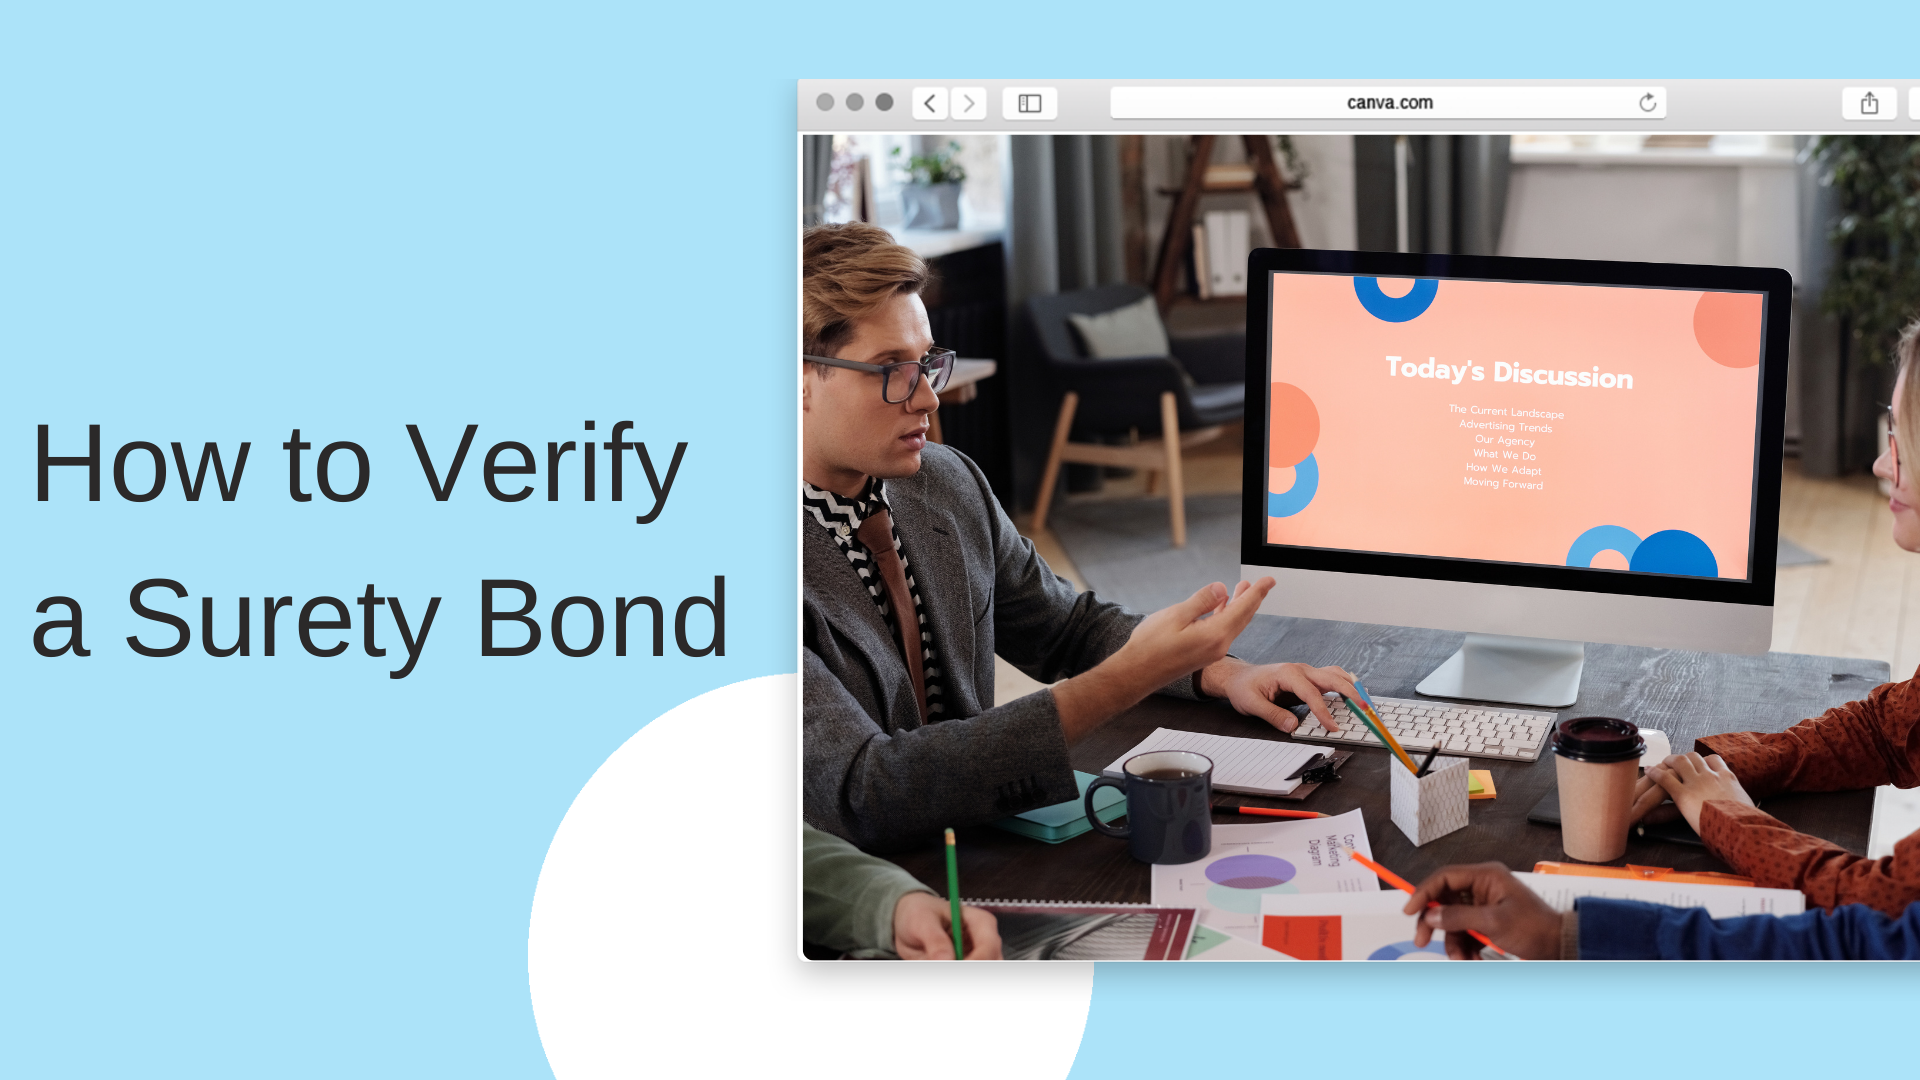 surety bond - How can you verify a surety bond